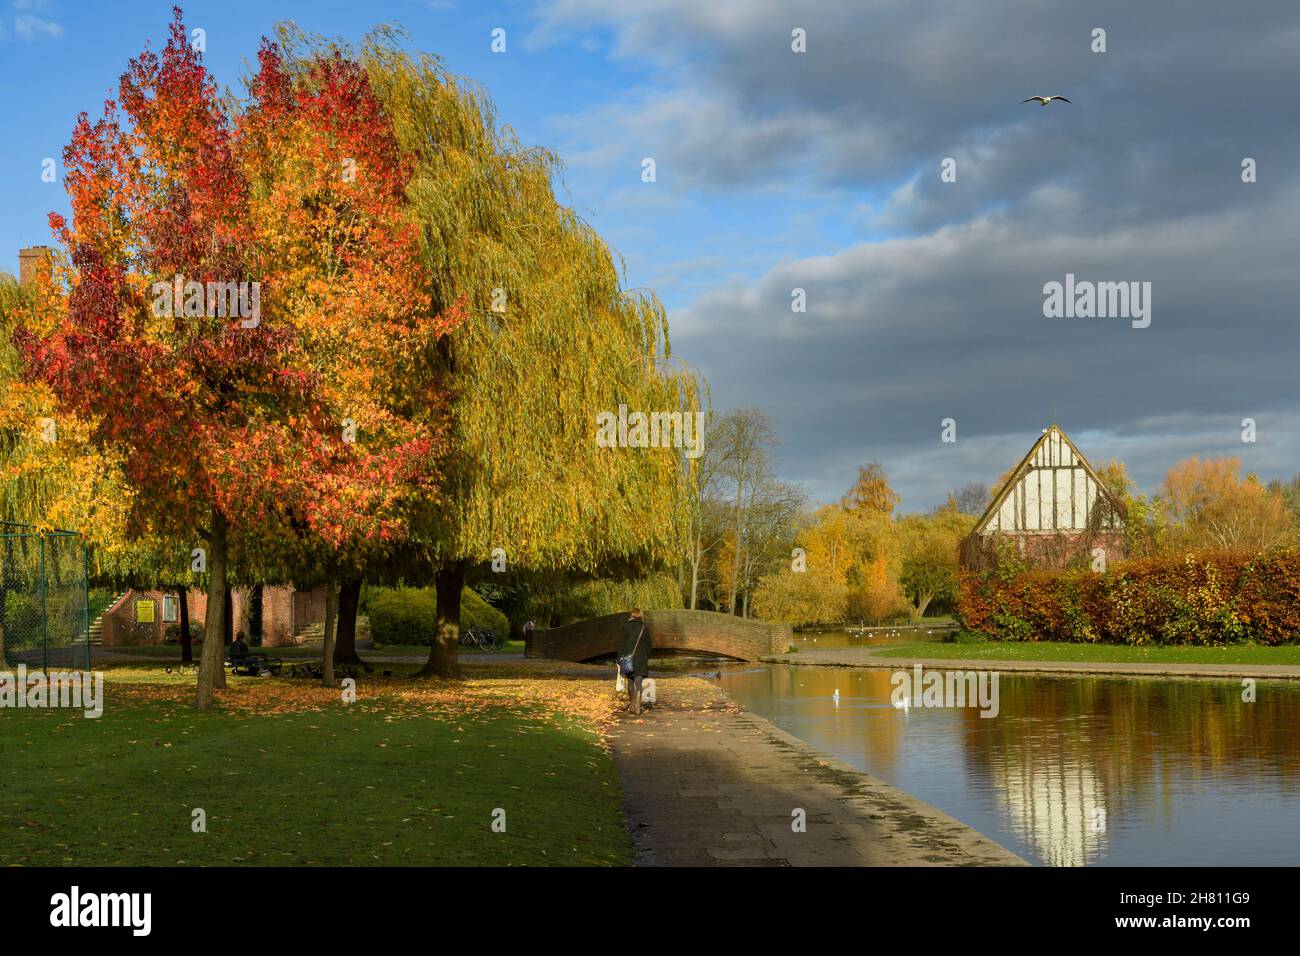 Scène automnale ensoleillée (dame marchant à côté d'arbres colorés, réflexions sur l'eau, pont) - pittoresque municipal Rowntree Memorial Park, York, Angleterre Royaume-Uni. Banque D'Images